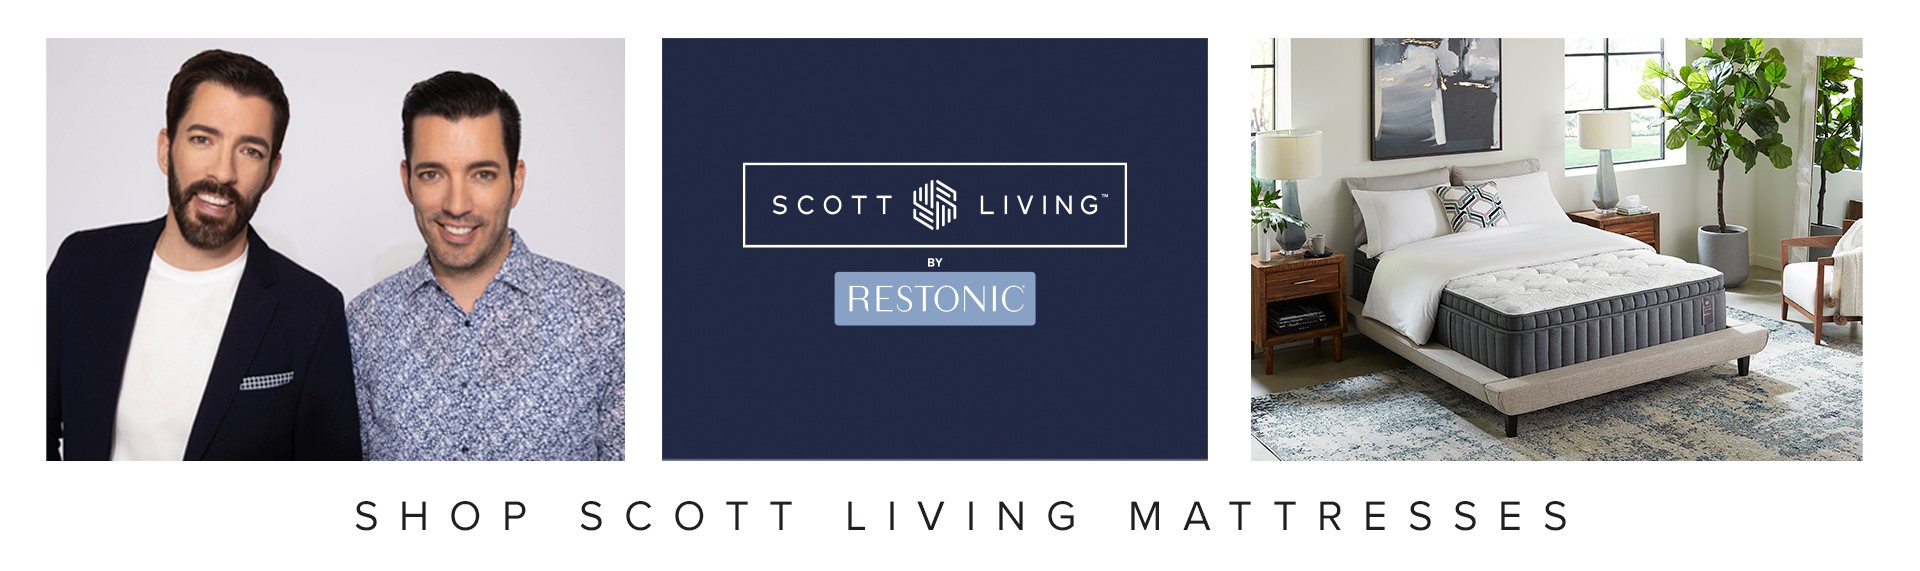 Scott Living přepravitelná matrace na spaní